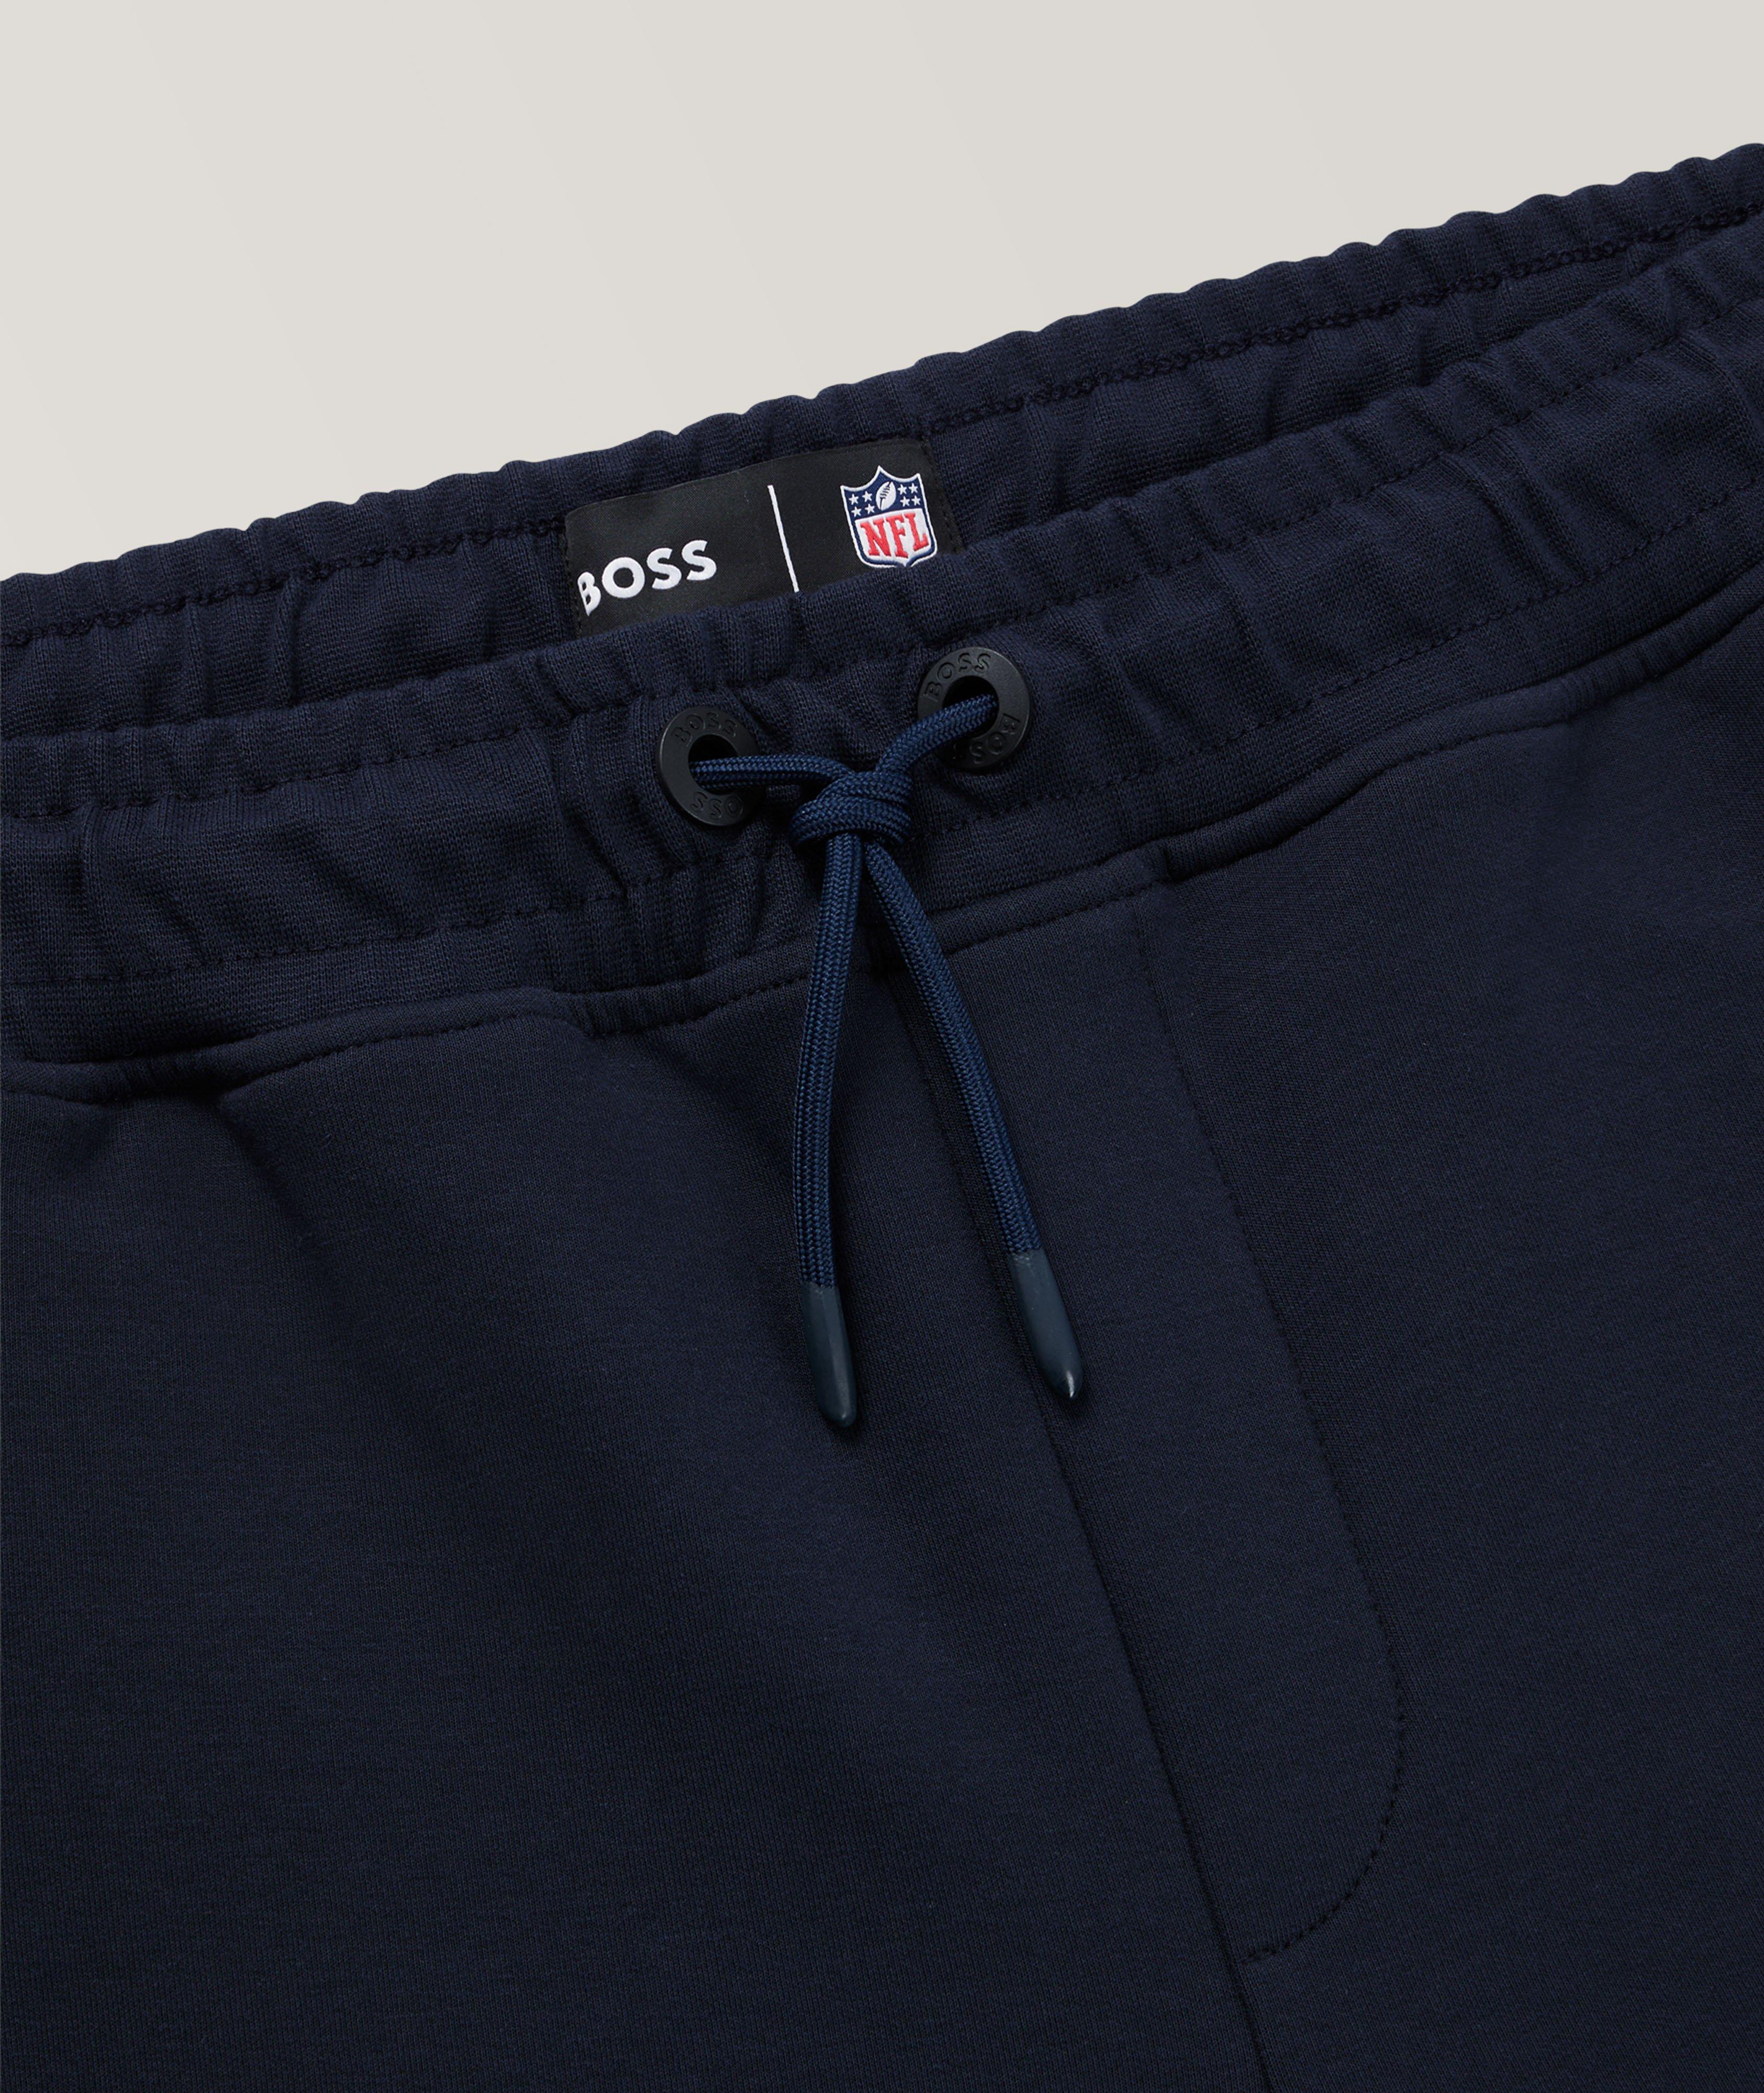 Pantalon sport en mélange de coton, collection NFL image 1